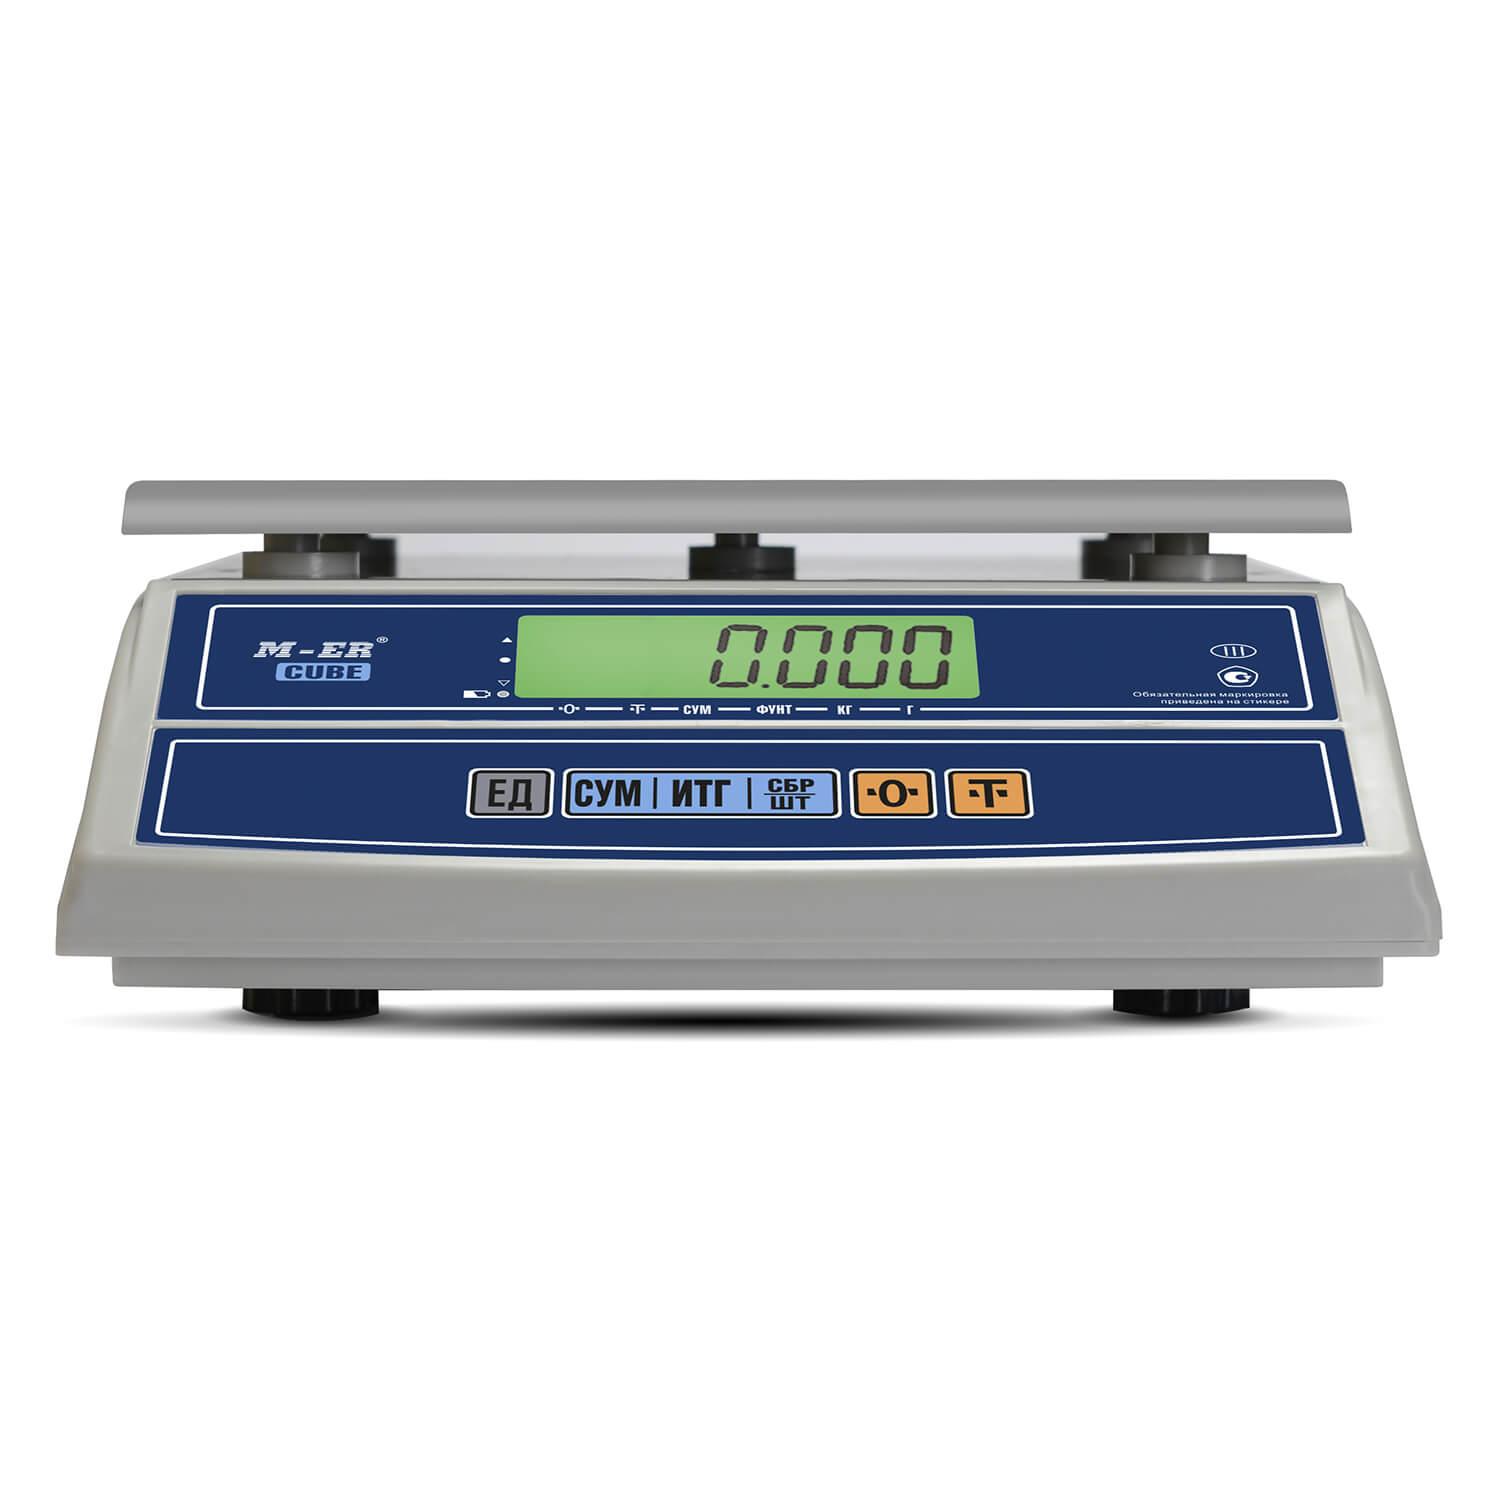 Фасовочные настольные весы M-ER 326 FL-15.2 LCD без АКБ (3641)